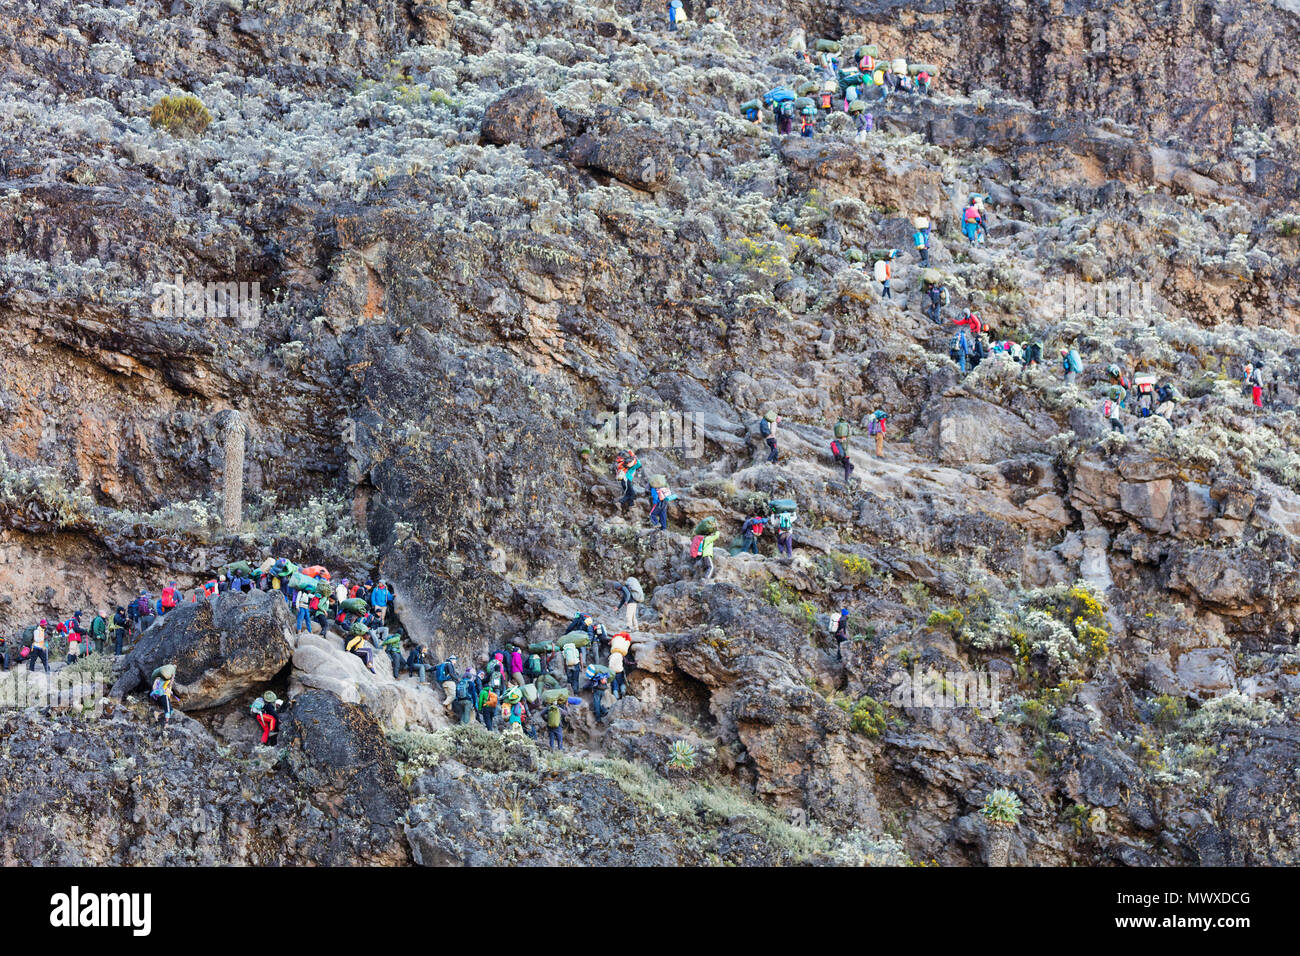 Les randonneurs et les porteurs sur Barranco Wall, Parc national du Kilimandjaro, Site du patrimoine mondial de l'UNESCO, la Tanzanie, l'Afrique de l'Est, l'Afrique Banque D'Images